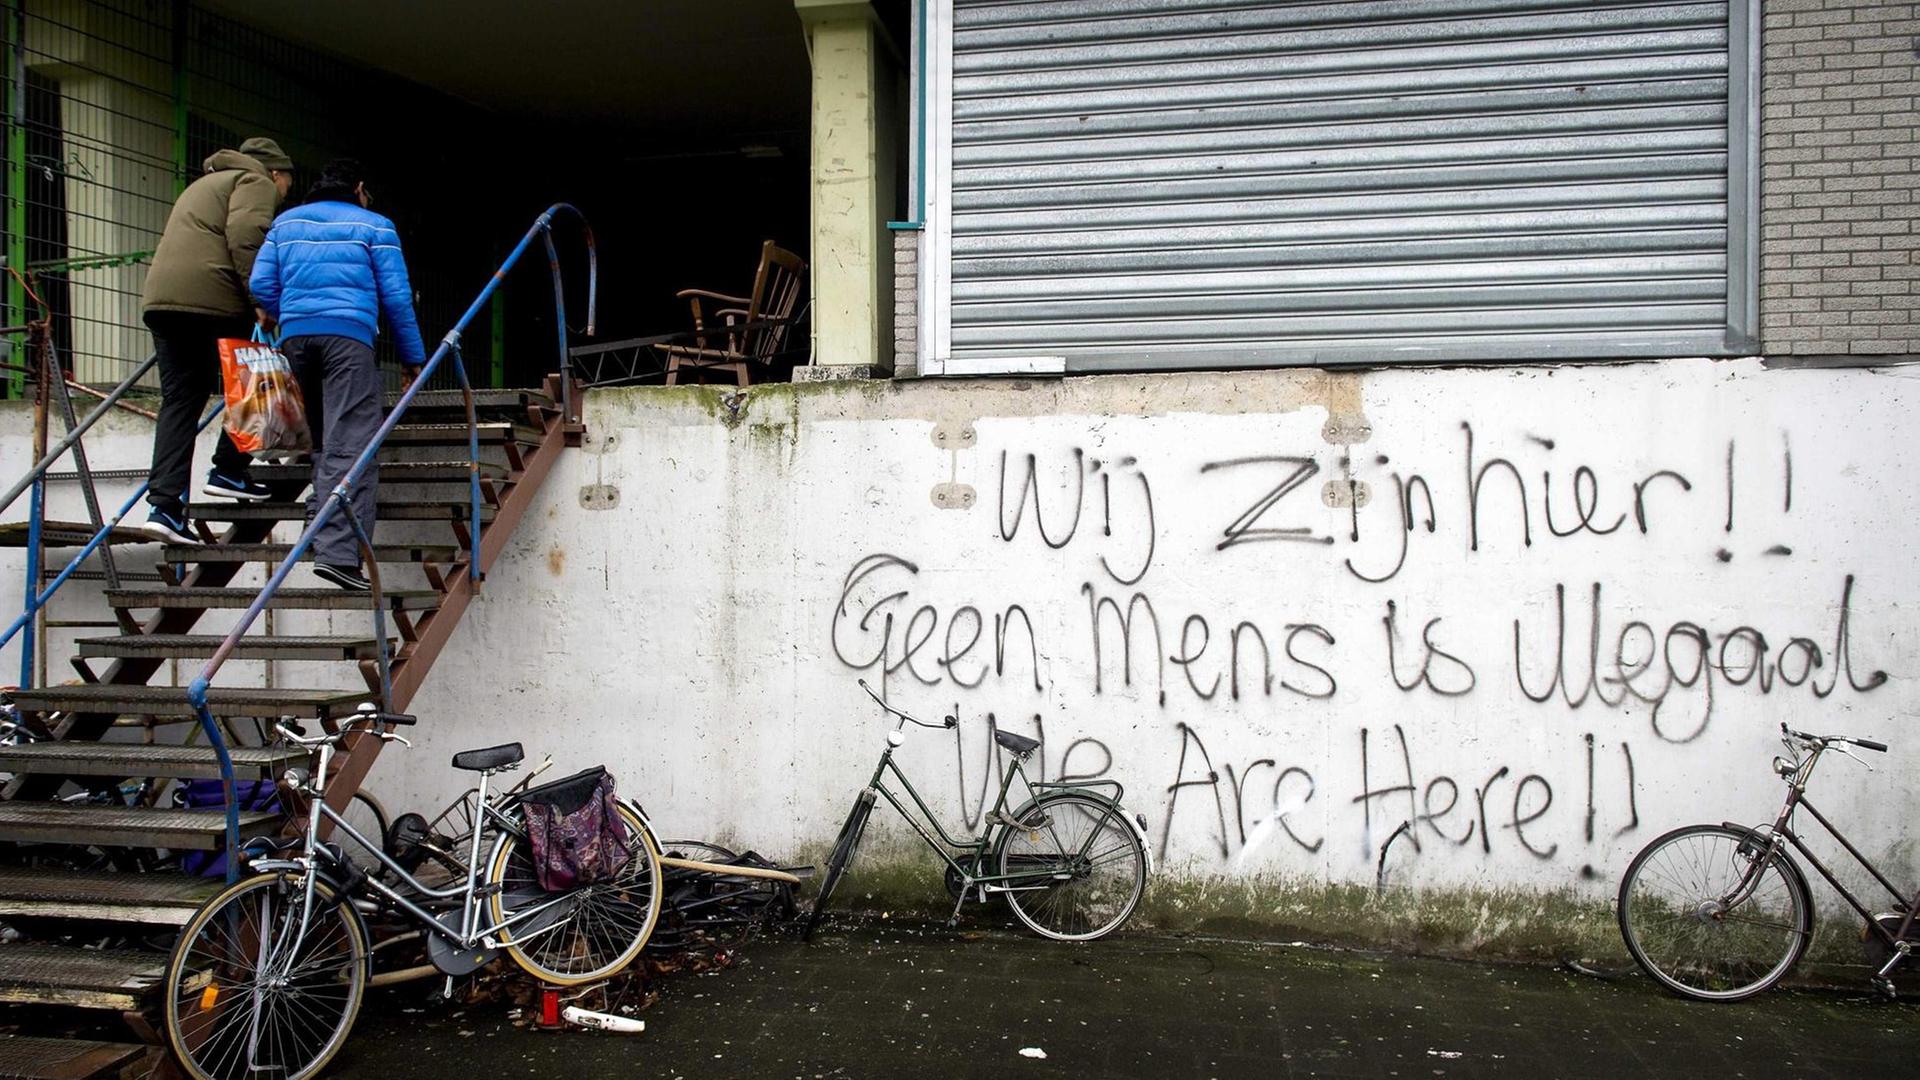 "Wir sind hier. Kein Mensch ist illegal". Schriftzug auf einem Gebäude, in dem Asylsuchende in Amsterdam leben.